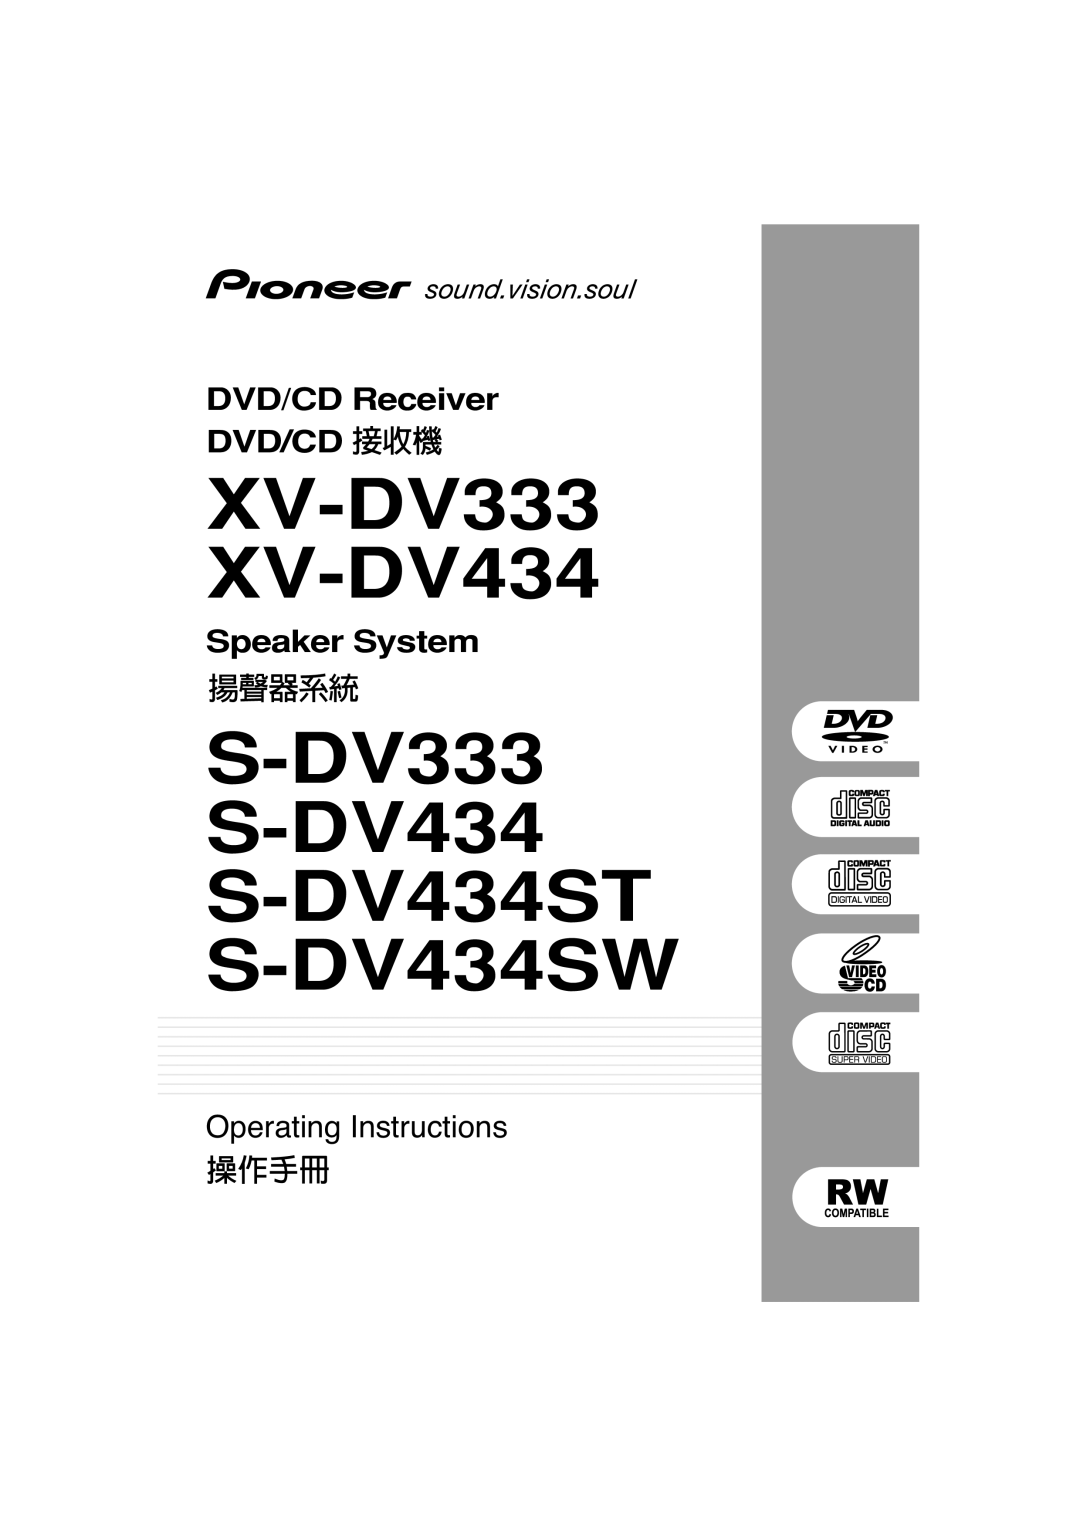 Pioneer manual XV-DV333 XV-DV434, S-DV333 S-DV434 S-DV434ST S-DV434SW, DVD/CD Receiver, Speaker System 